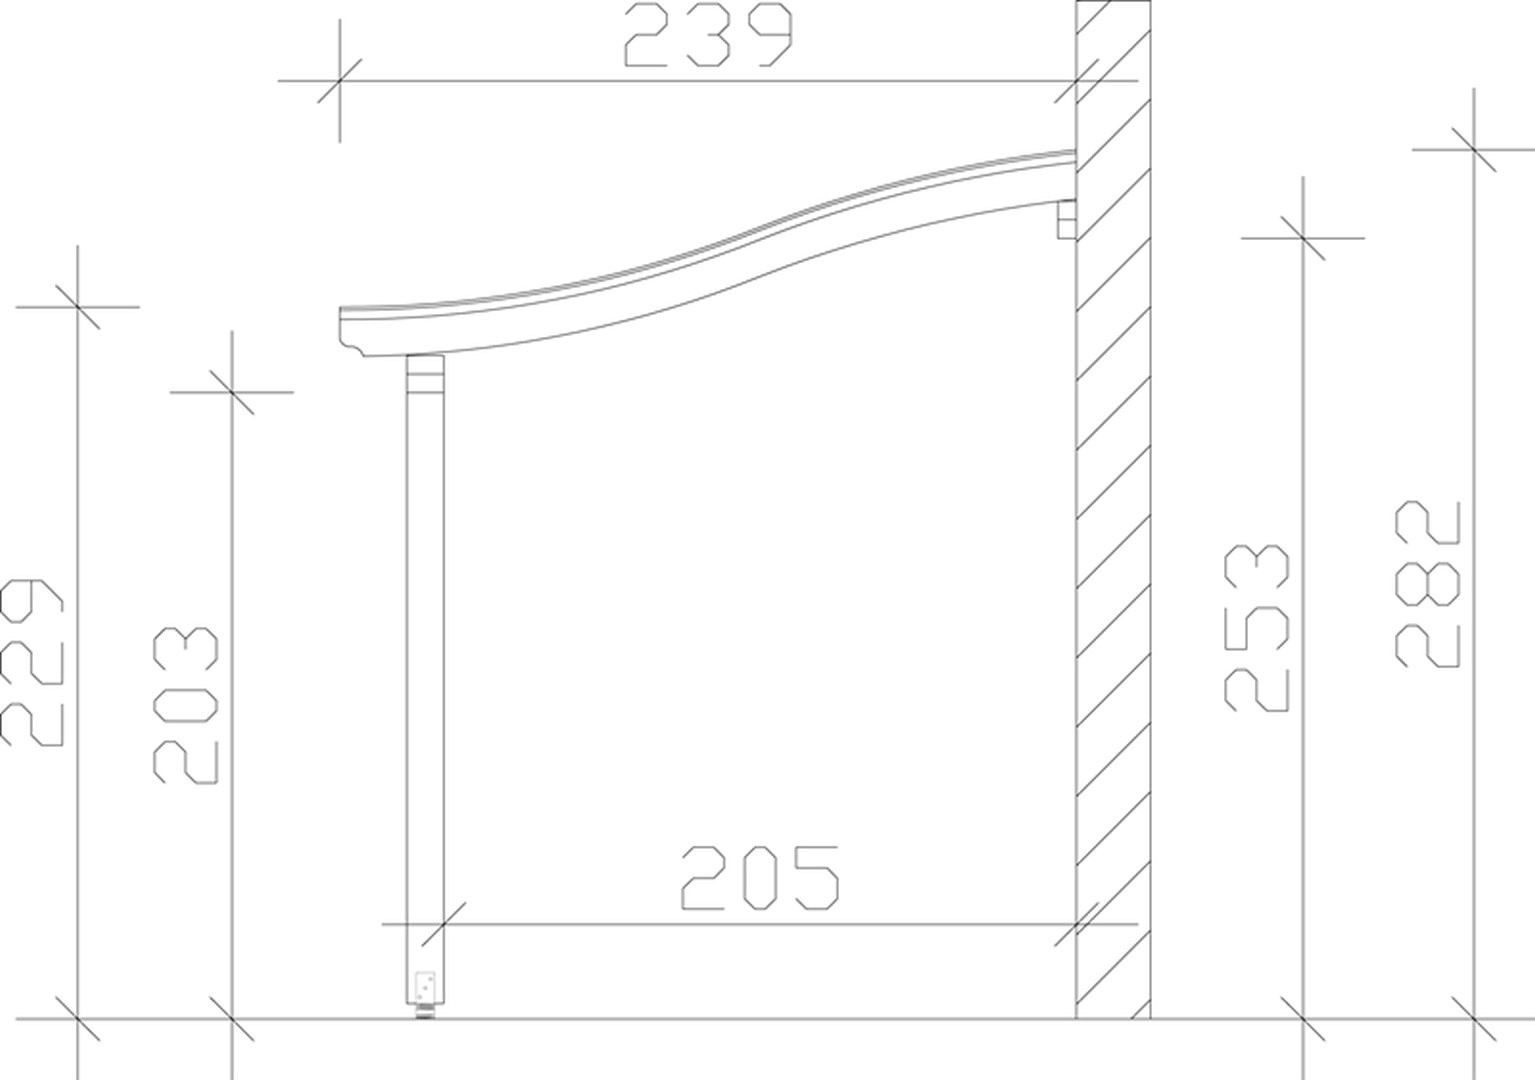 Skan Holz Terrassenüberdachung Venezia 541 x 239 cm, Leimholz, Doppelstegplatten